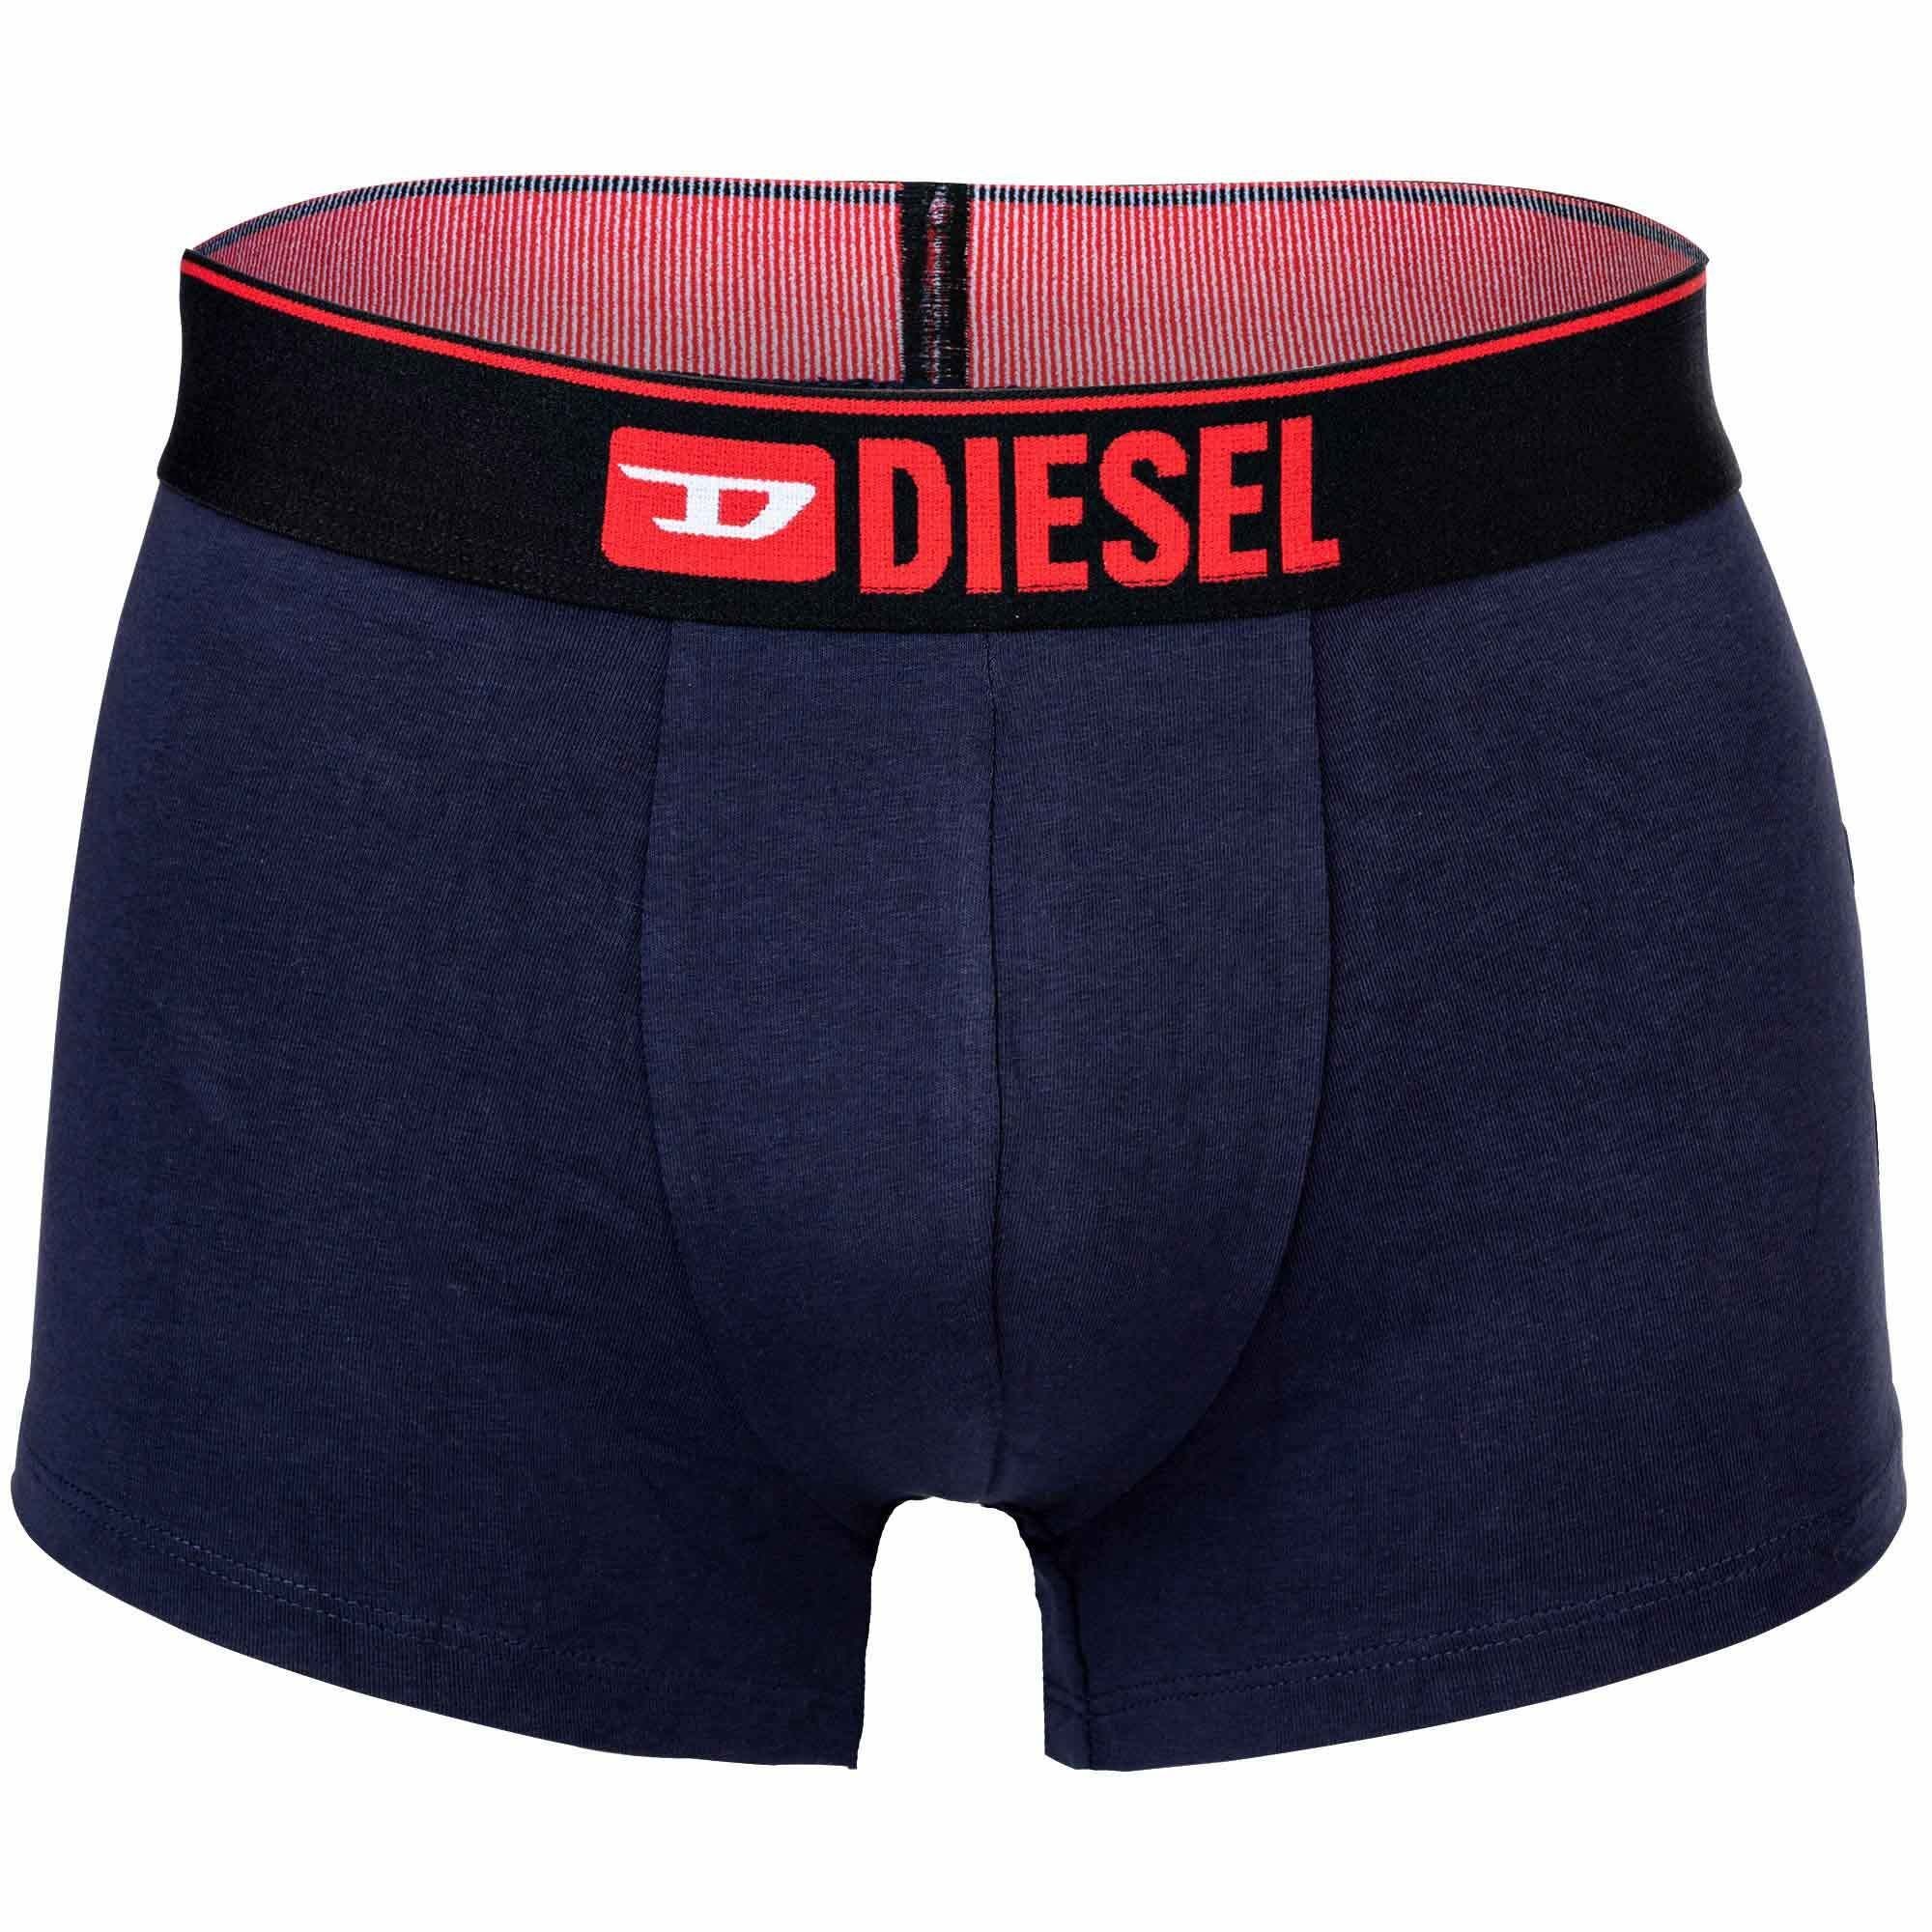 3er Dunkelblau/Weiß Boxer Boxershorts, Herren - Pack Diesel